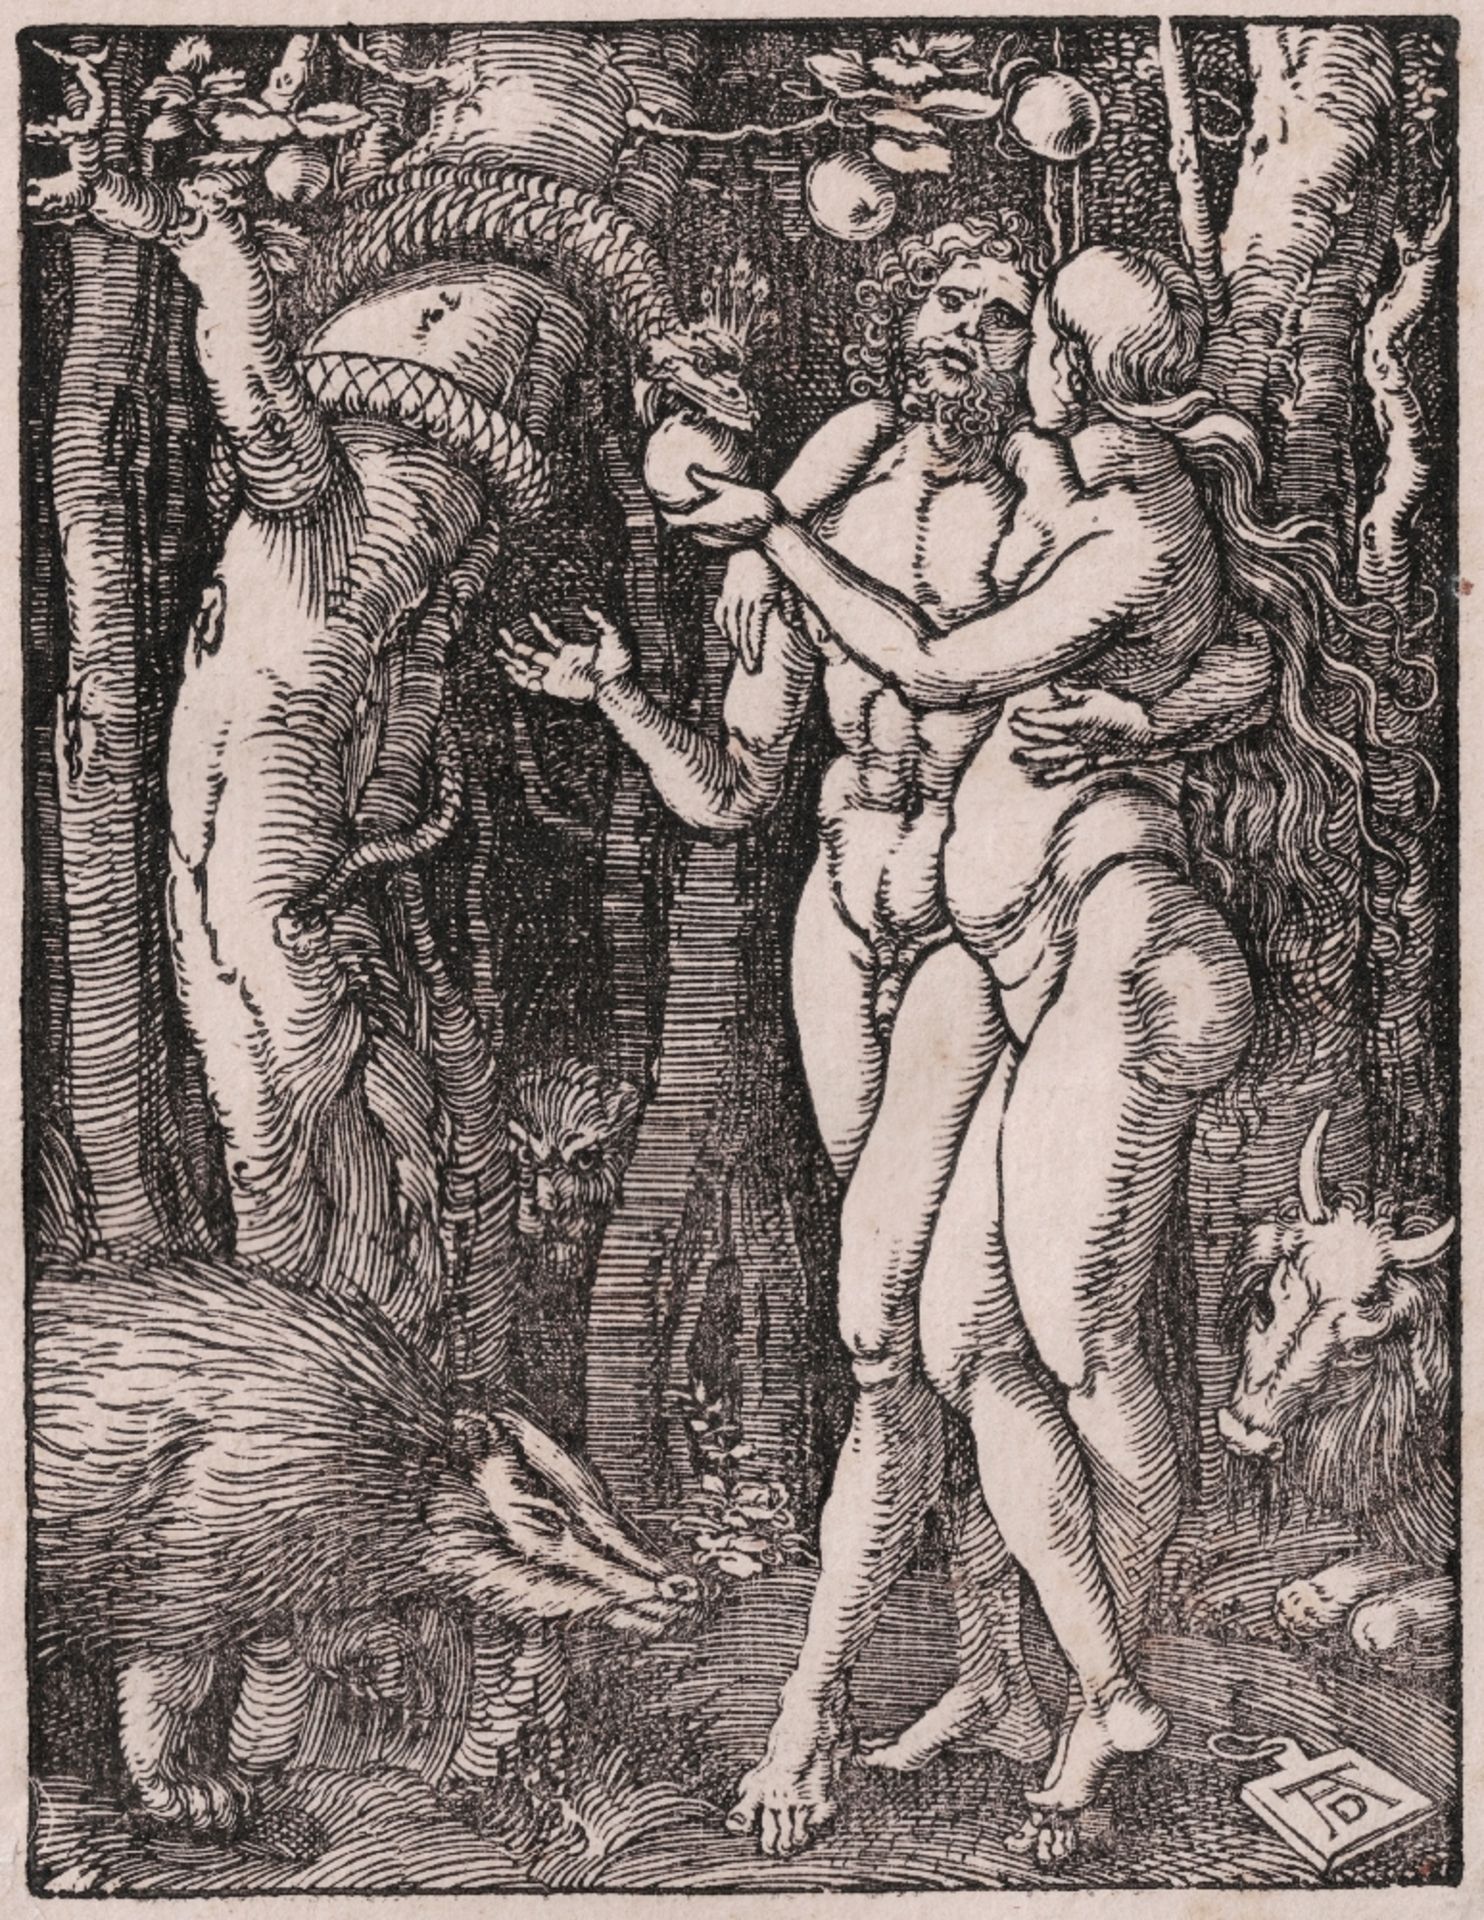 Albrecht Dürer - The Fall of Man - 1510